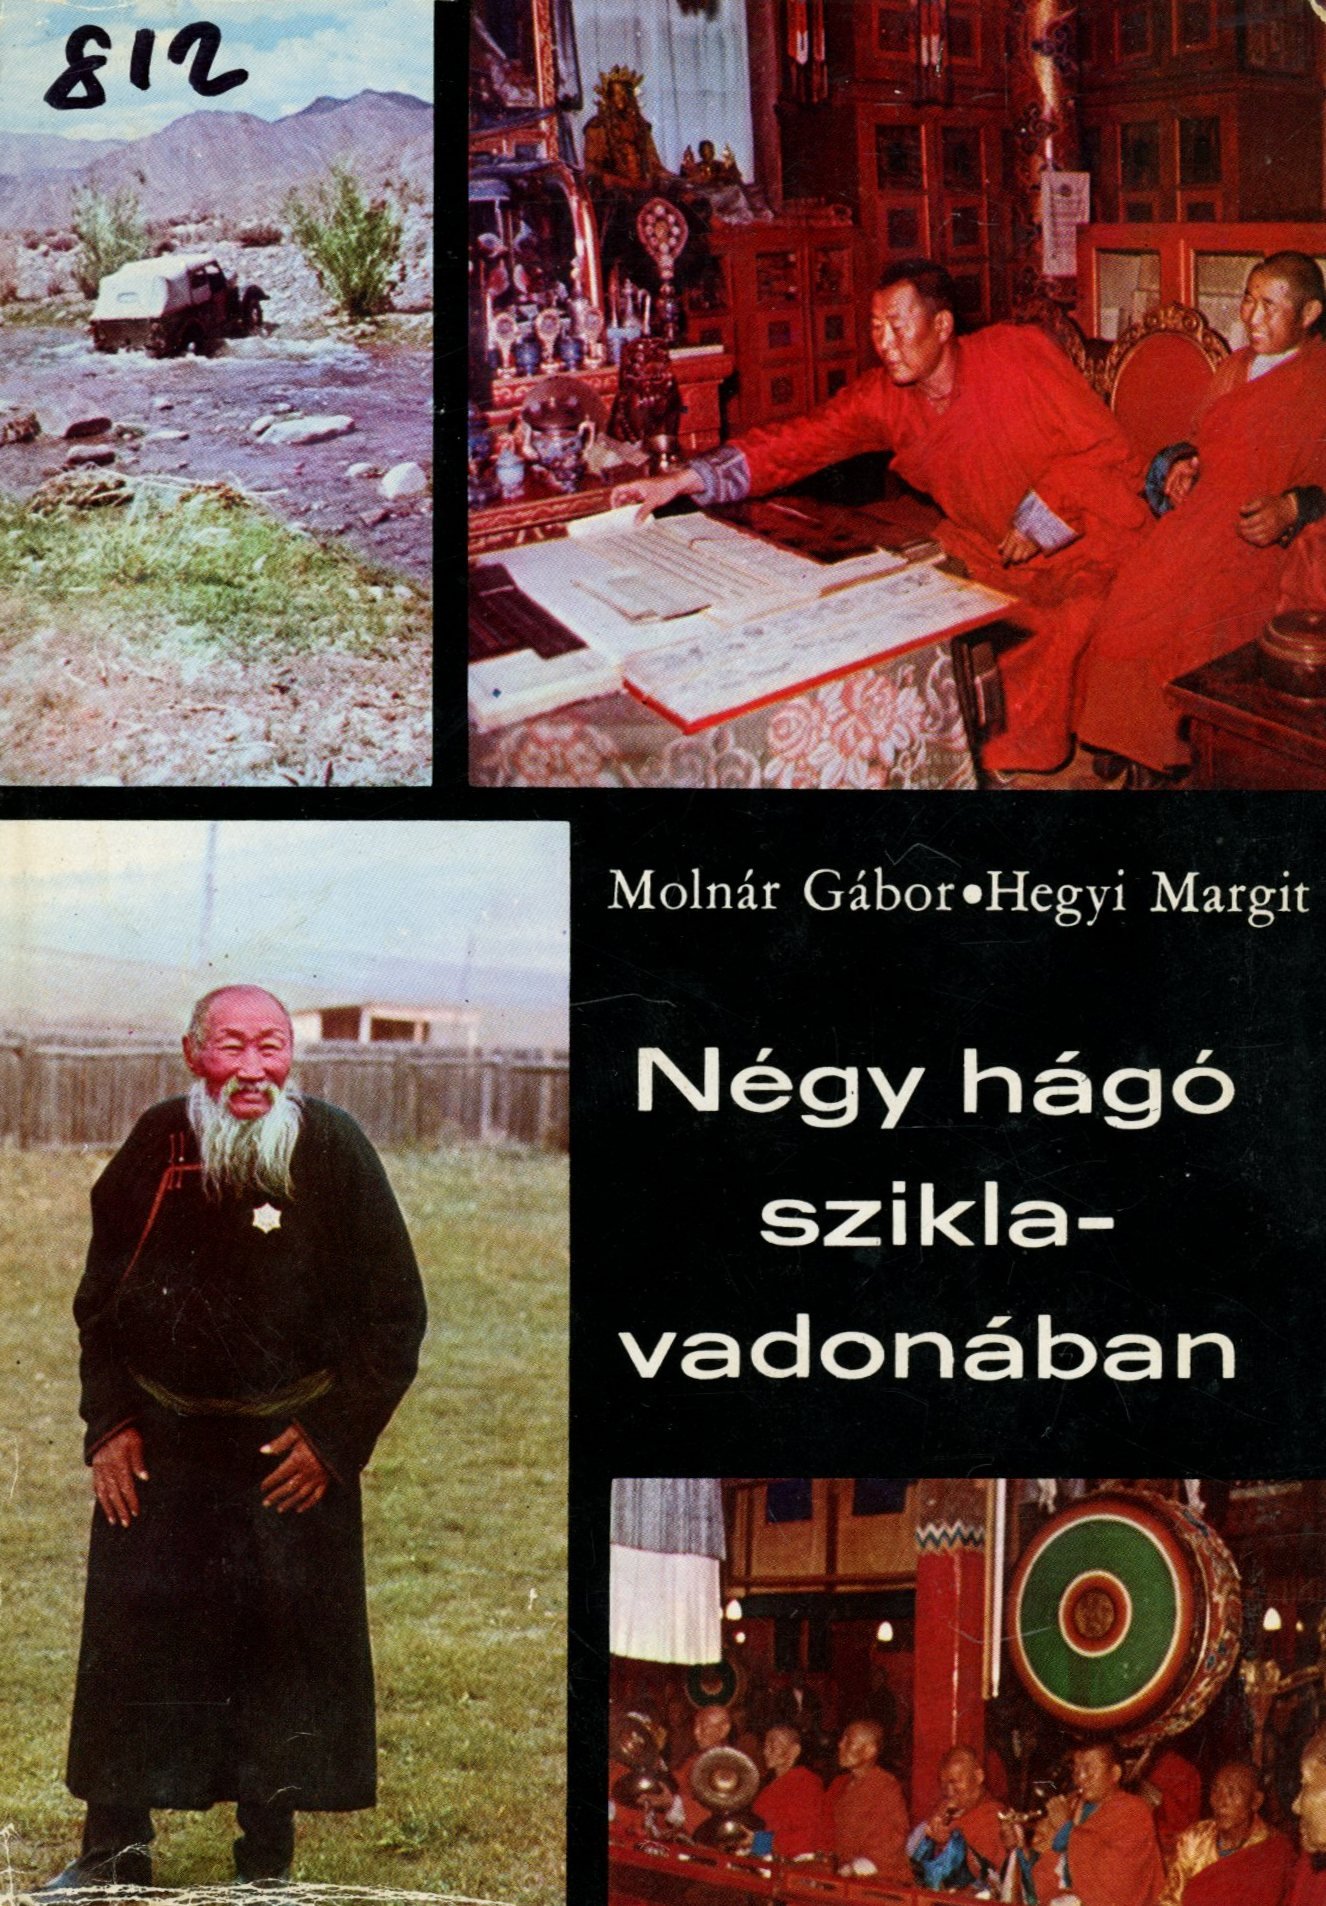 Molnár Gábor - Hegyi Margit (Erkel Ferenc Múzeum és Könyvtár, Gyula CC BY-NC-SA)